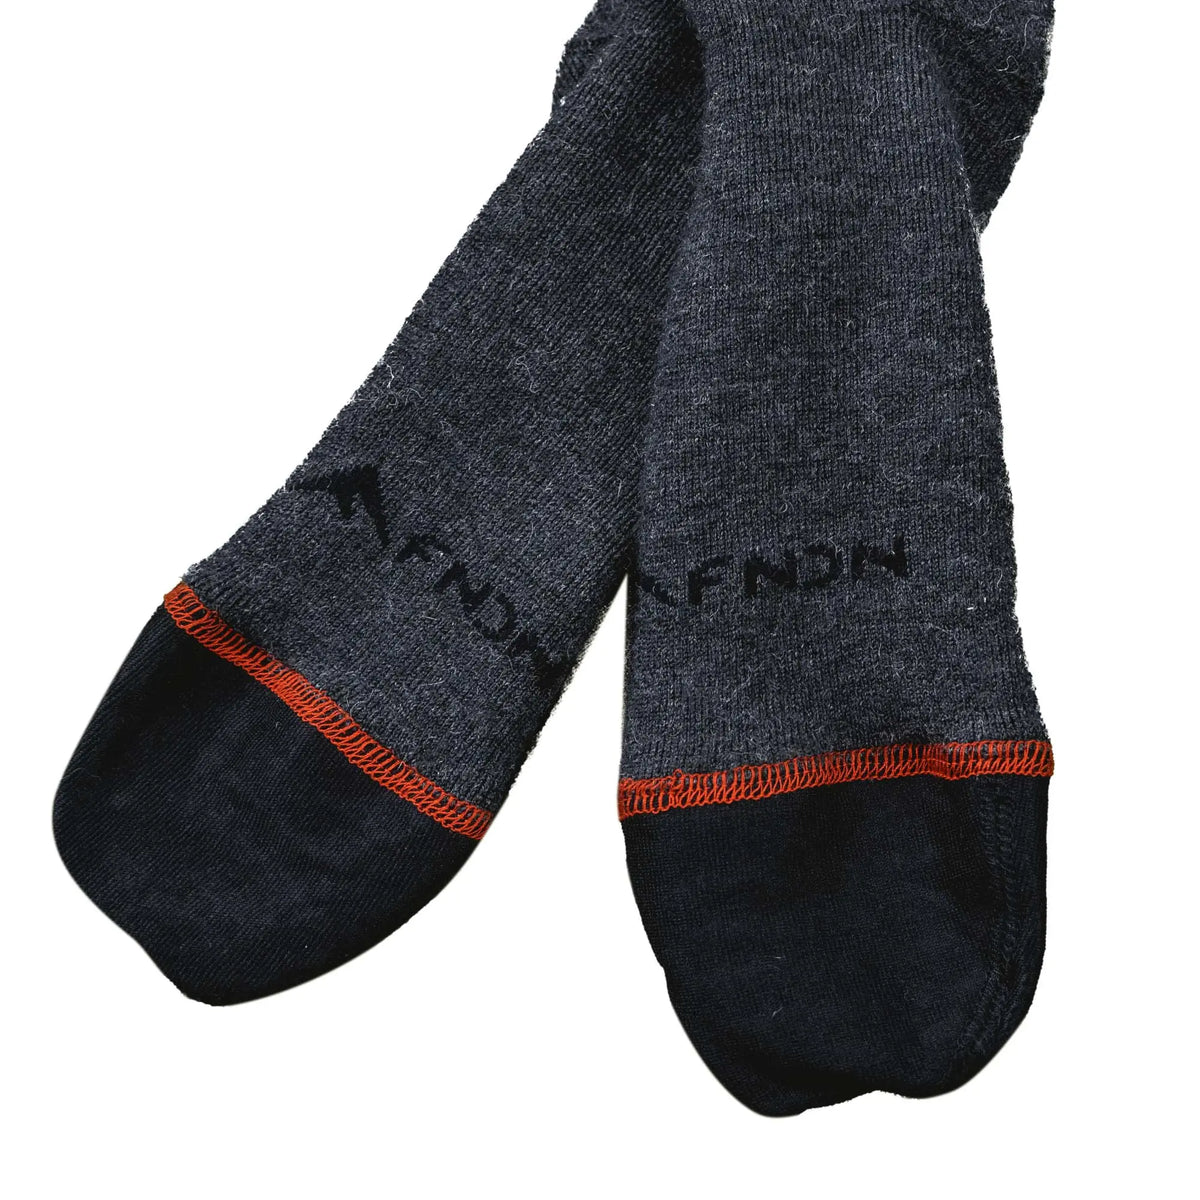 FNDN Heated 3.7V Sports Socks